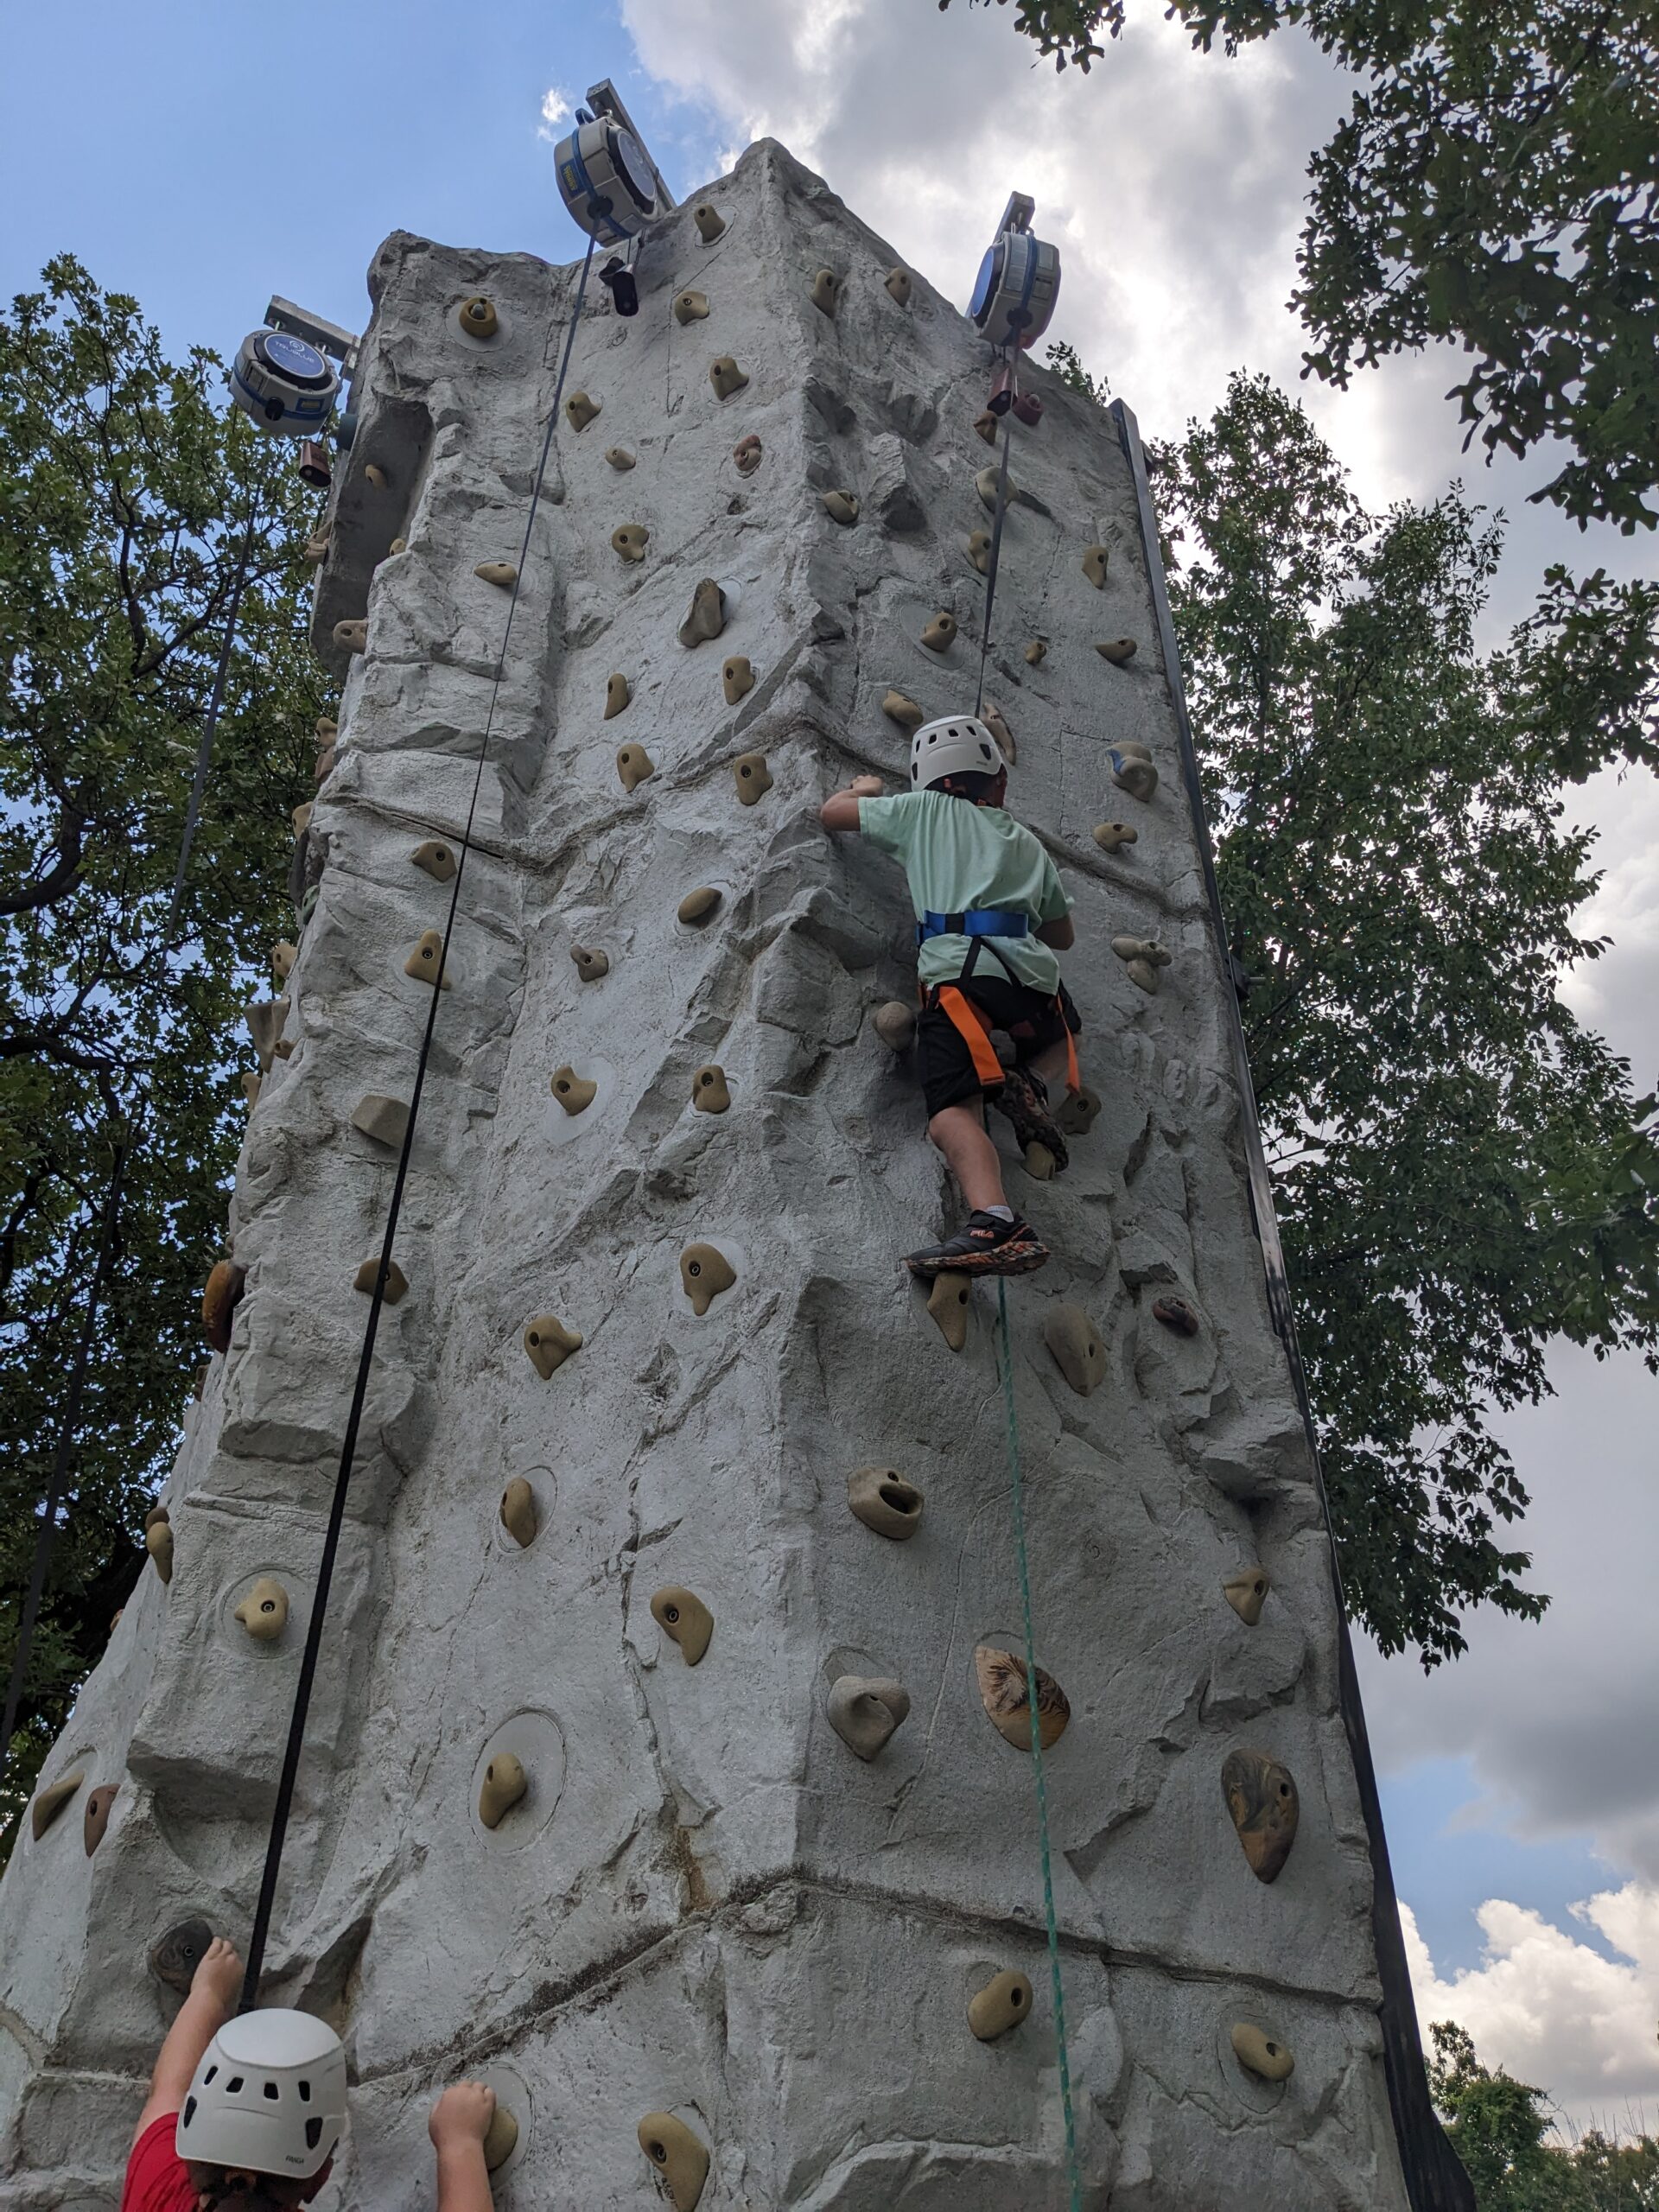 Cub Scouts climbing a climbing wall